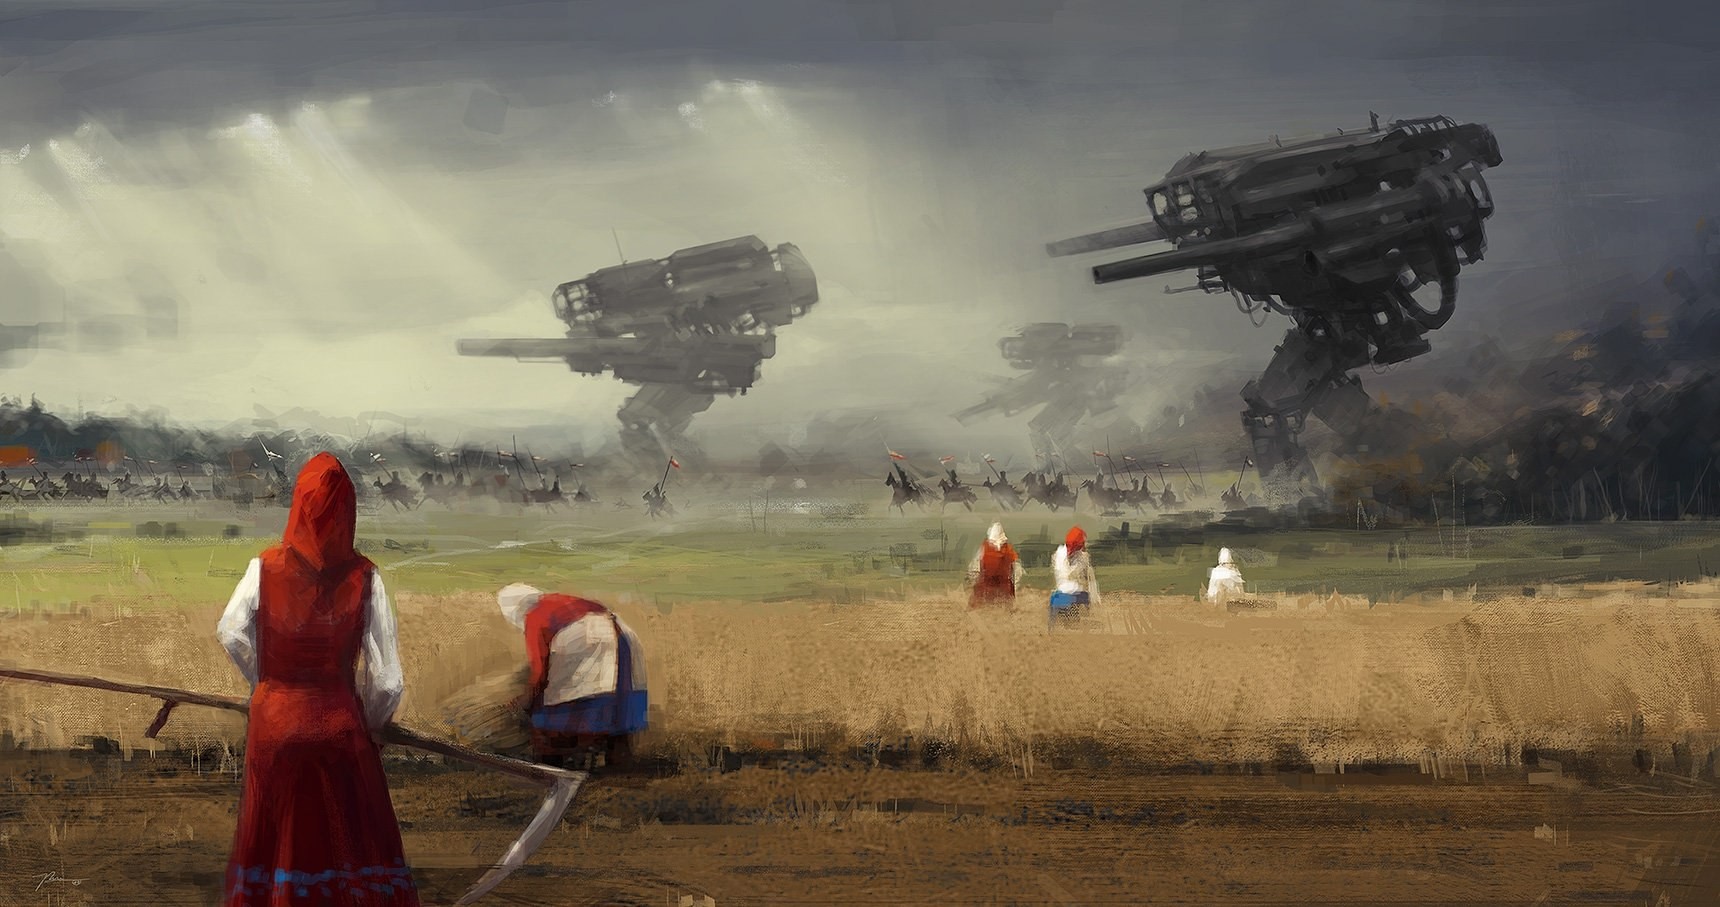 General 1720x907 dystopian science fiction artwork scythe women mechs workers farmers sky futuristic field outdoors